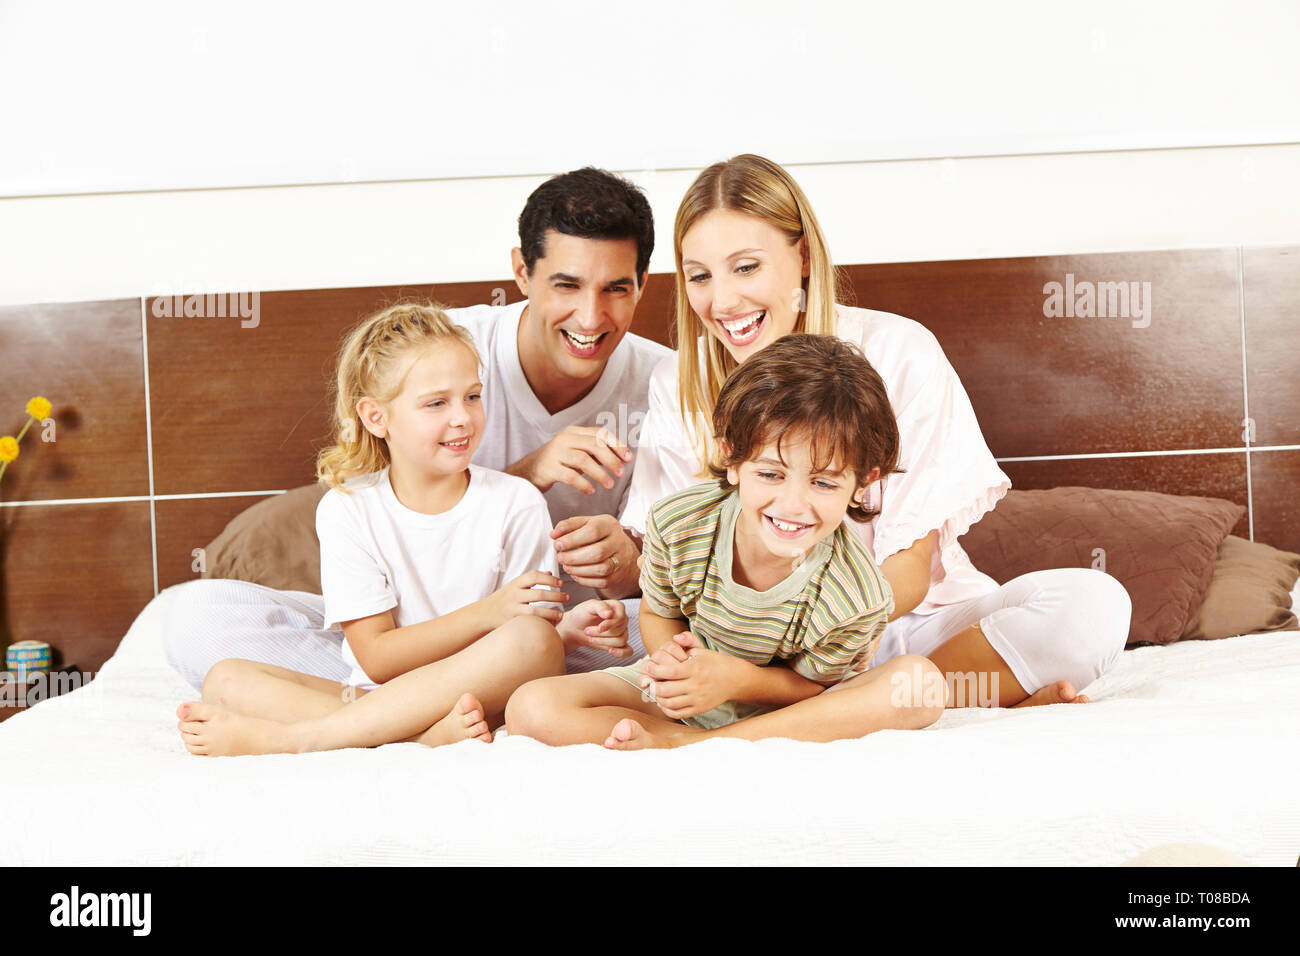 Lachend Familie sitzt im Bett mit zwei Kindern und Kitzeln einander Stockfoto